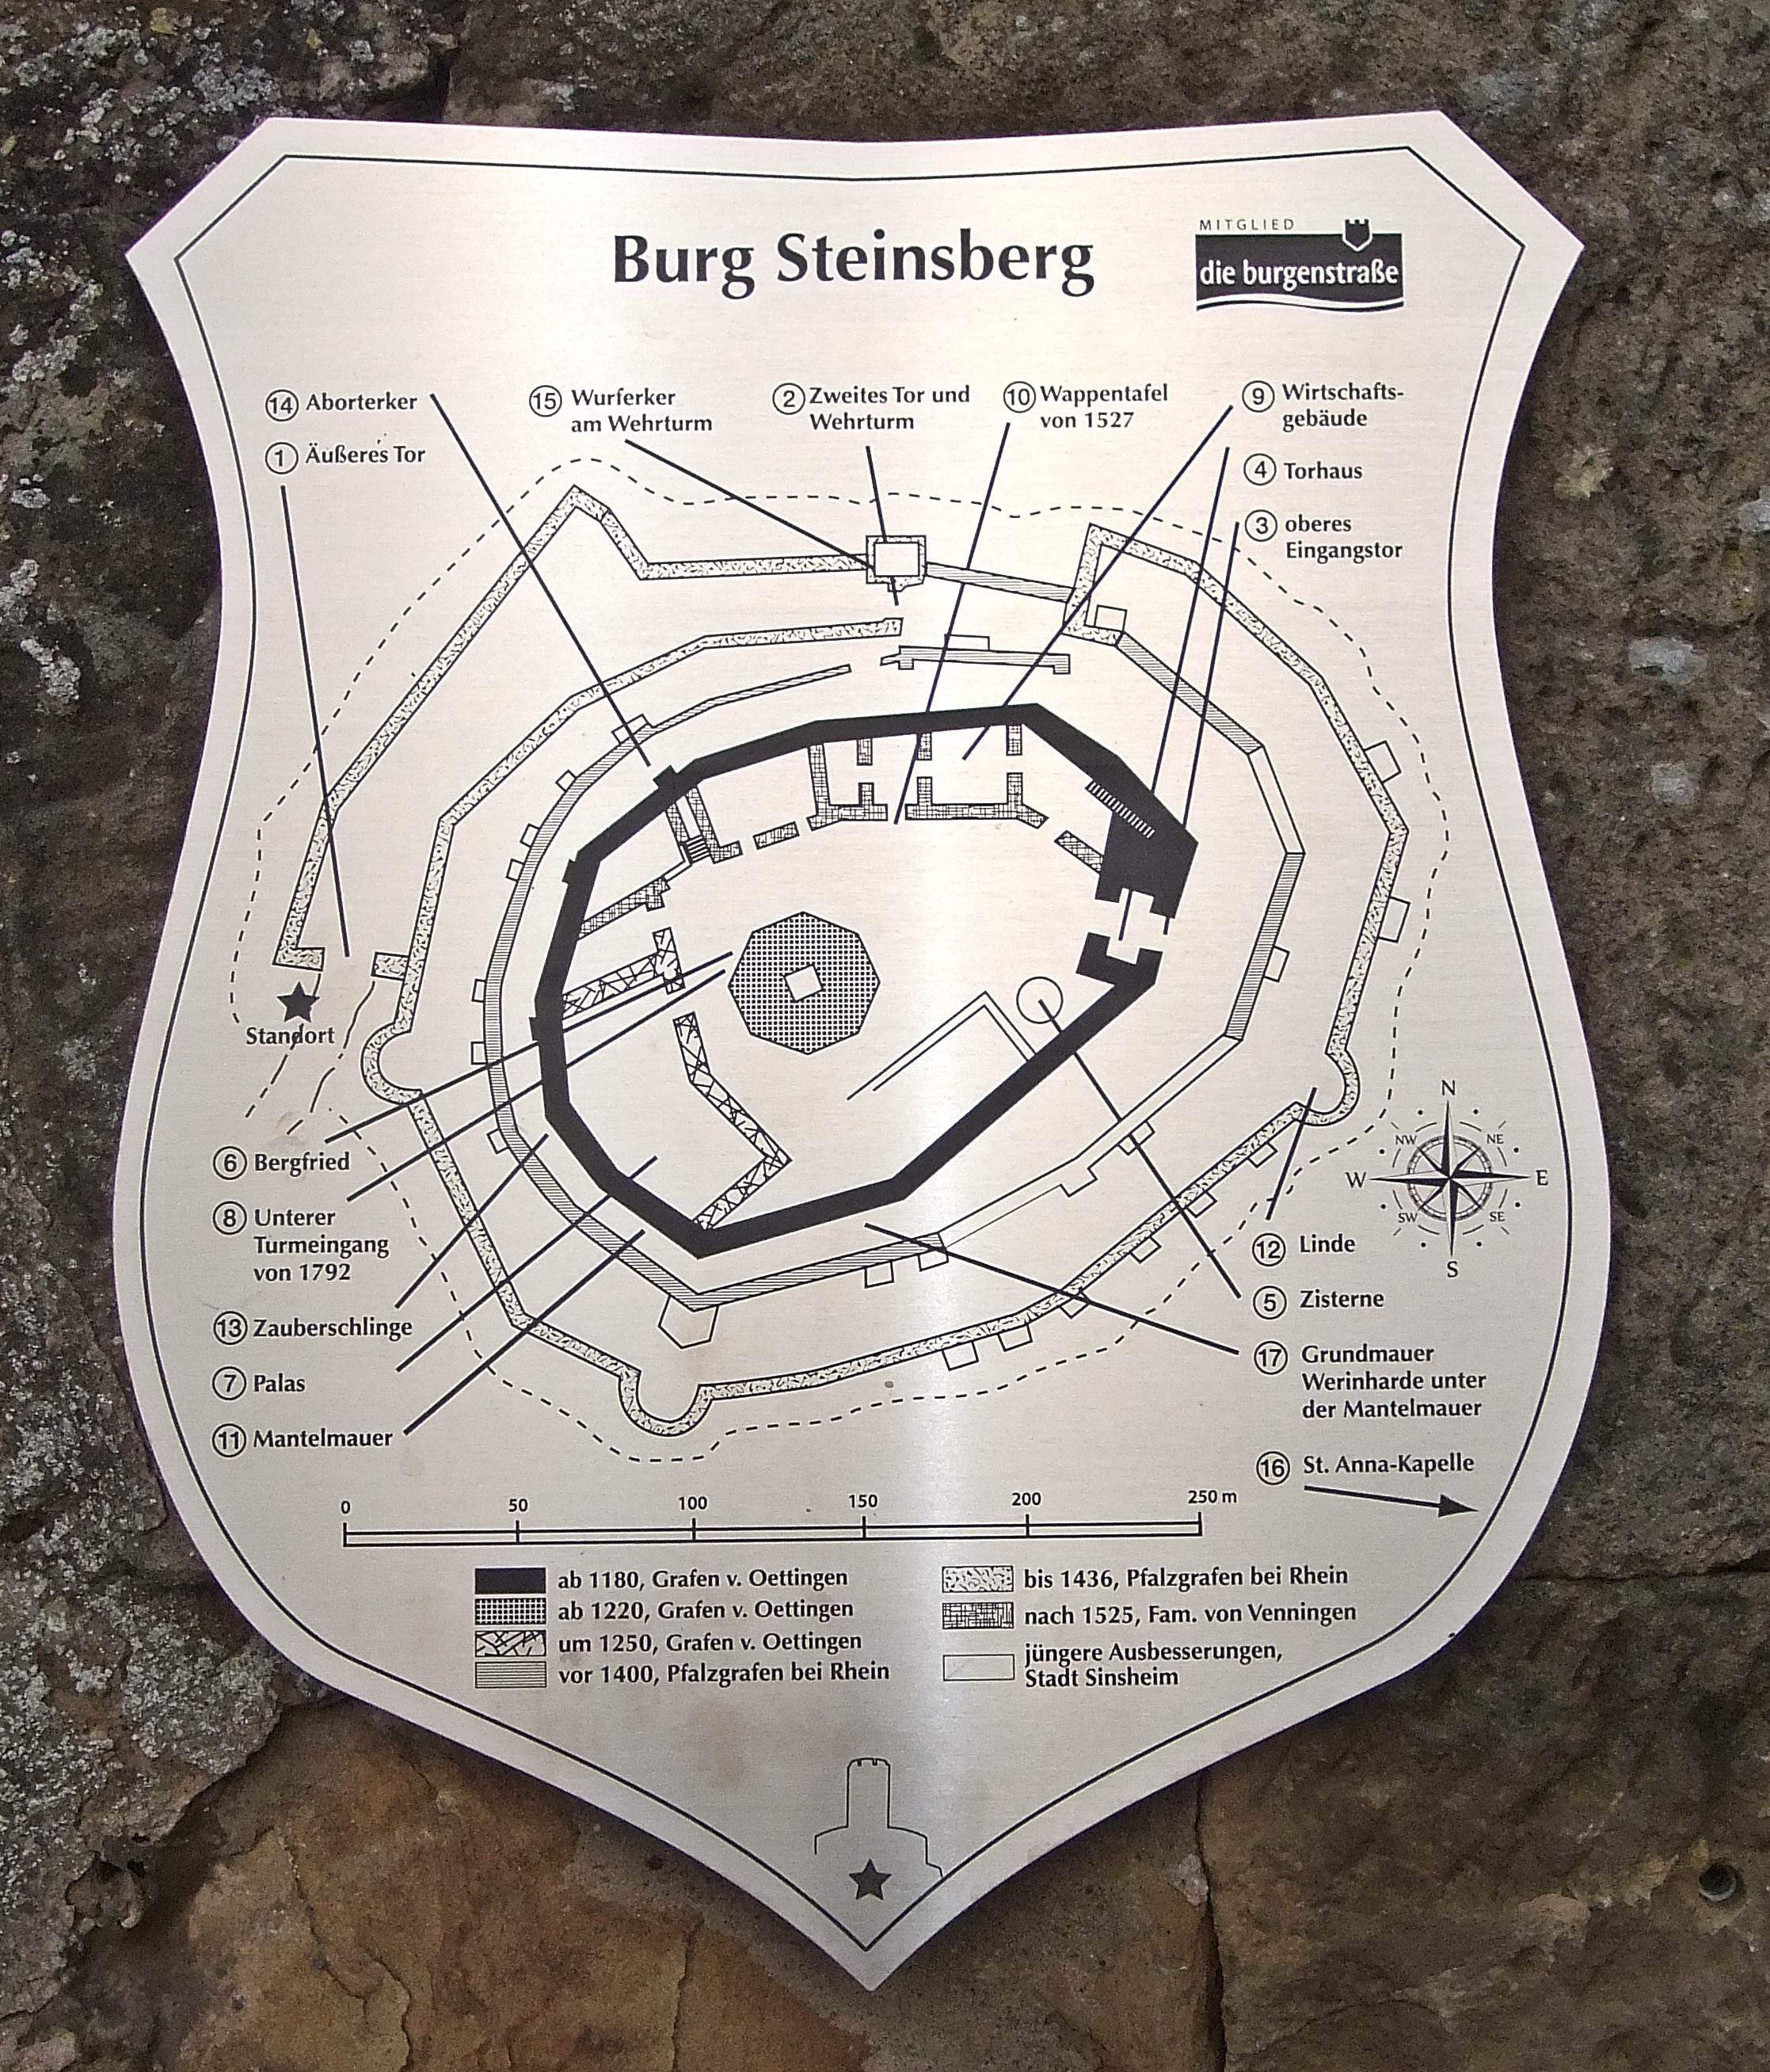 Datei:Infotafel Burg Steinsberg Lageplan neu.JPG